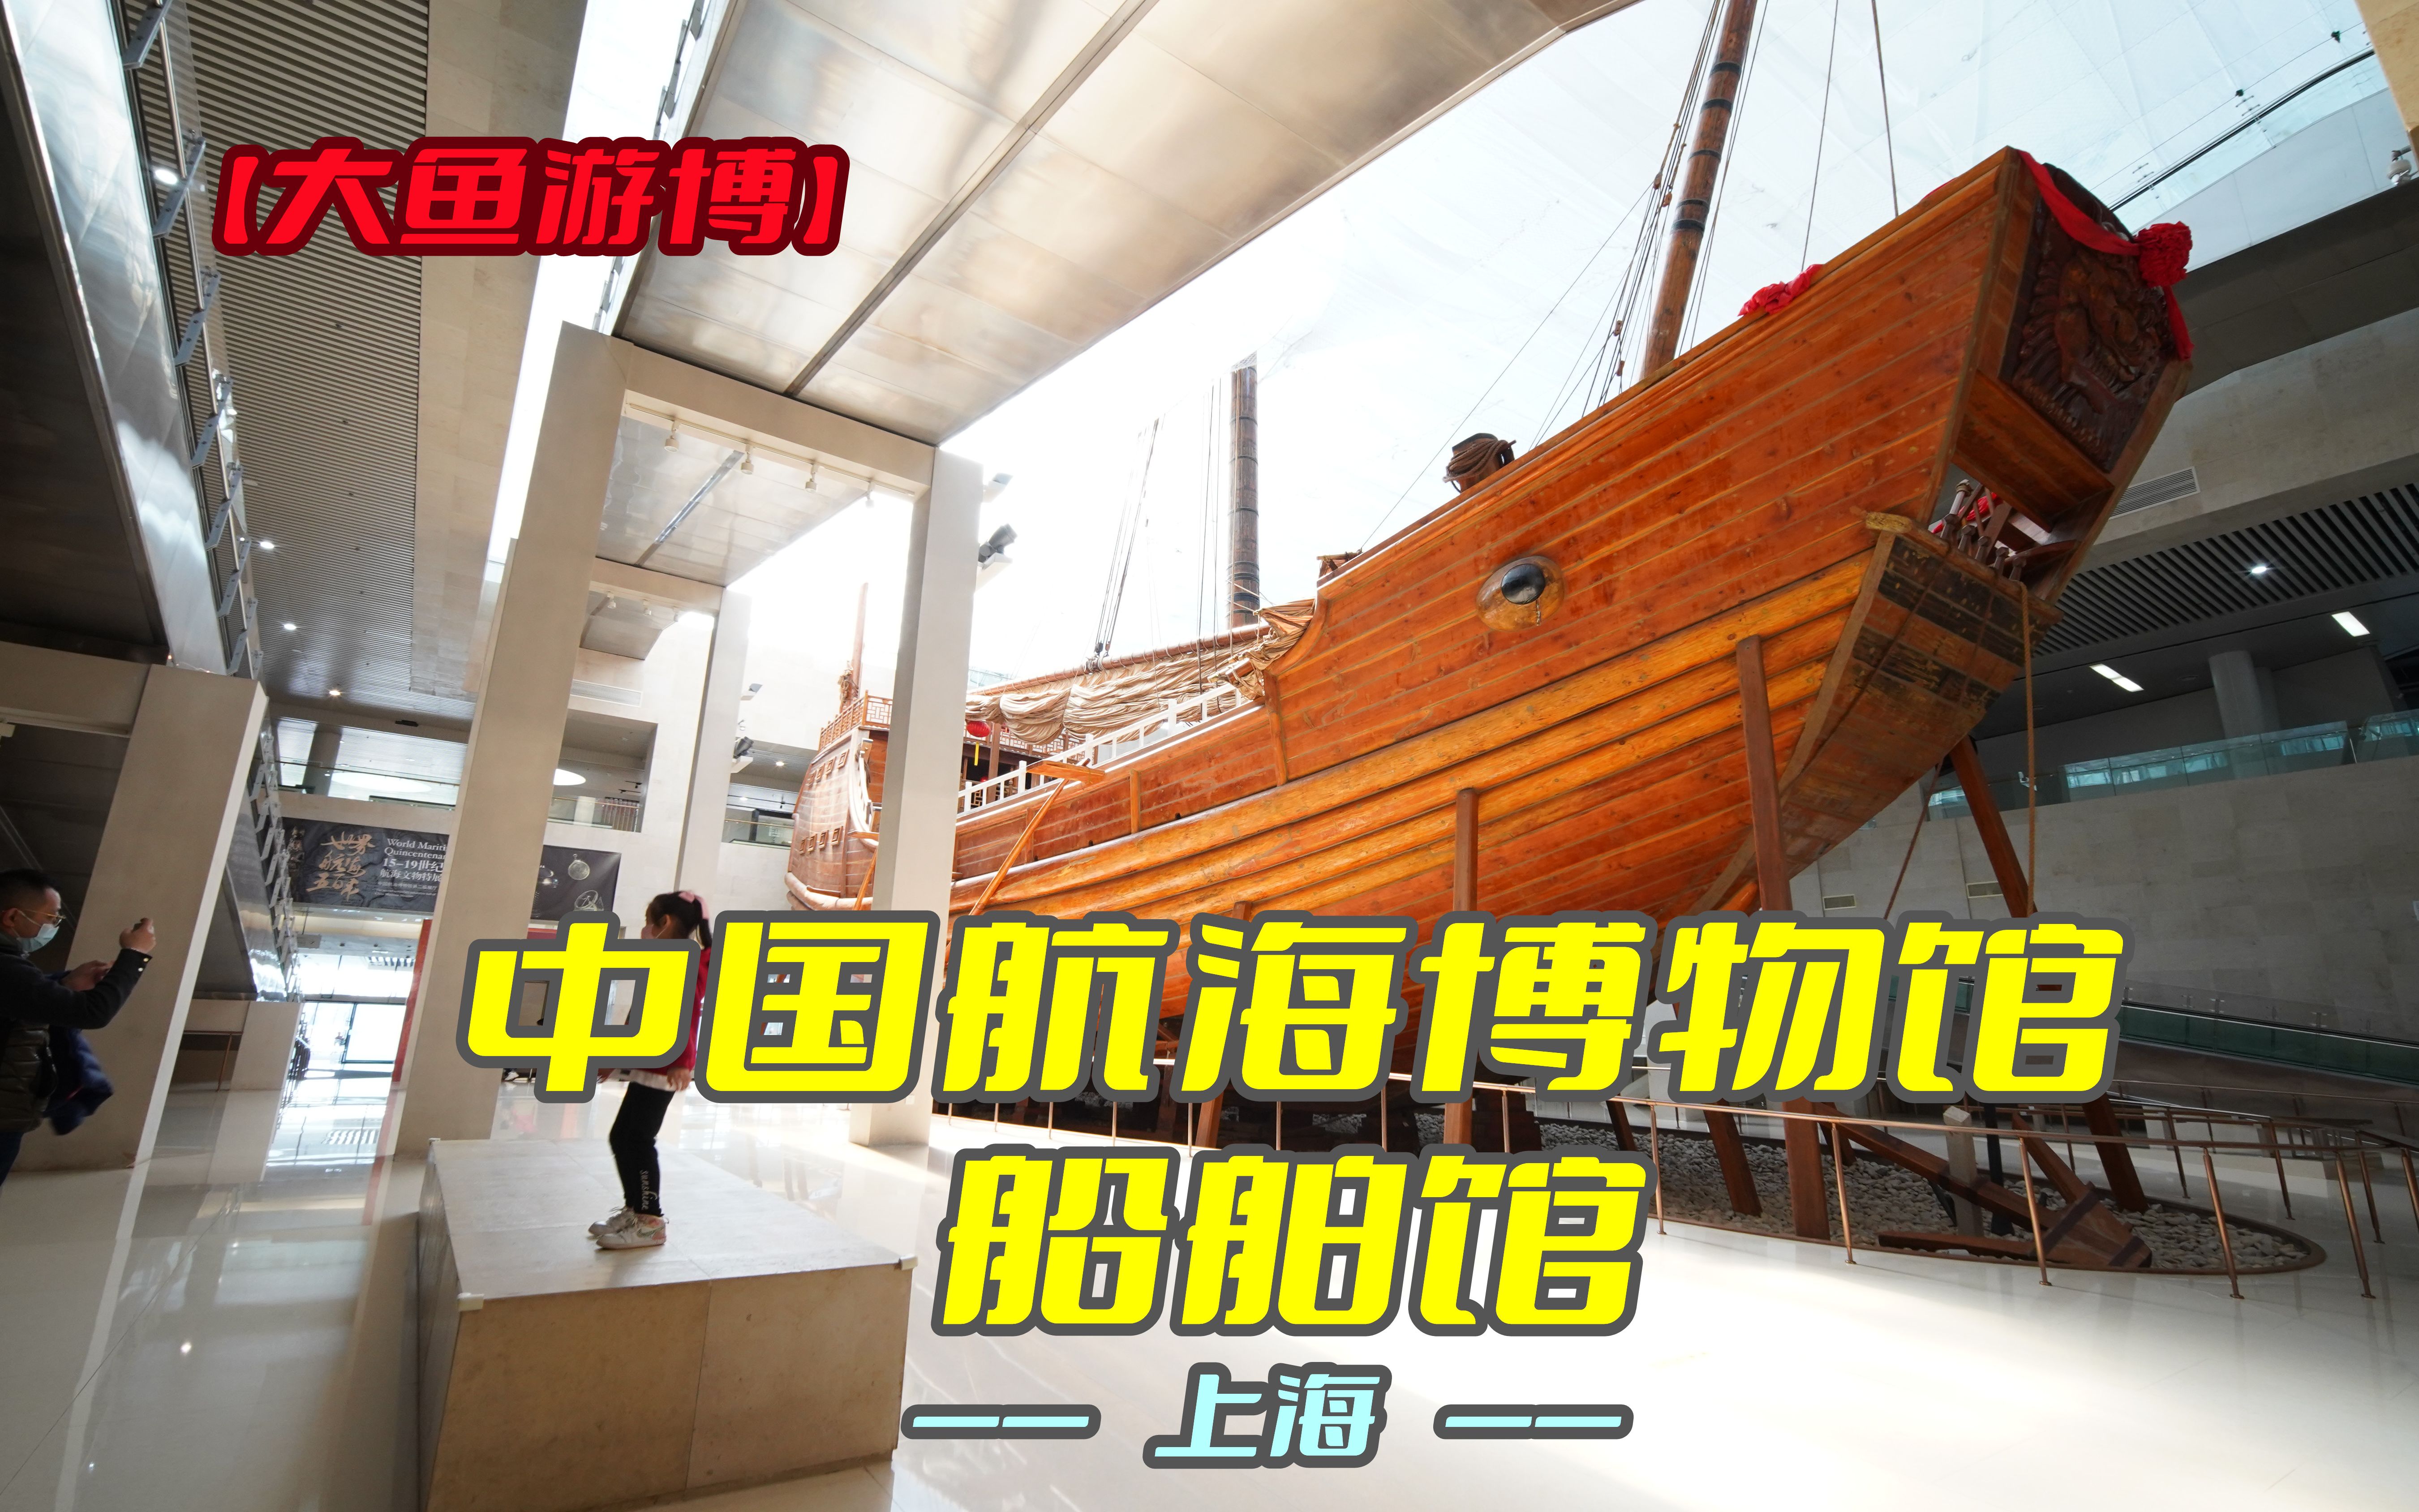 航海博物馆上海简介图片